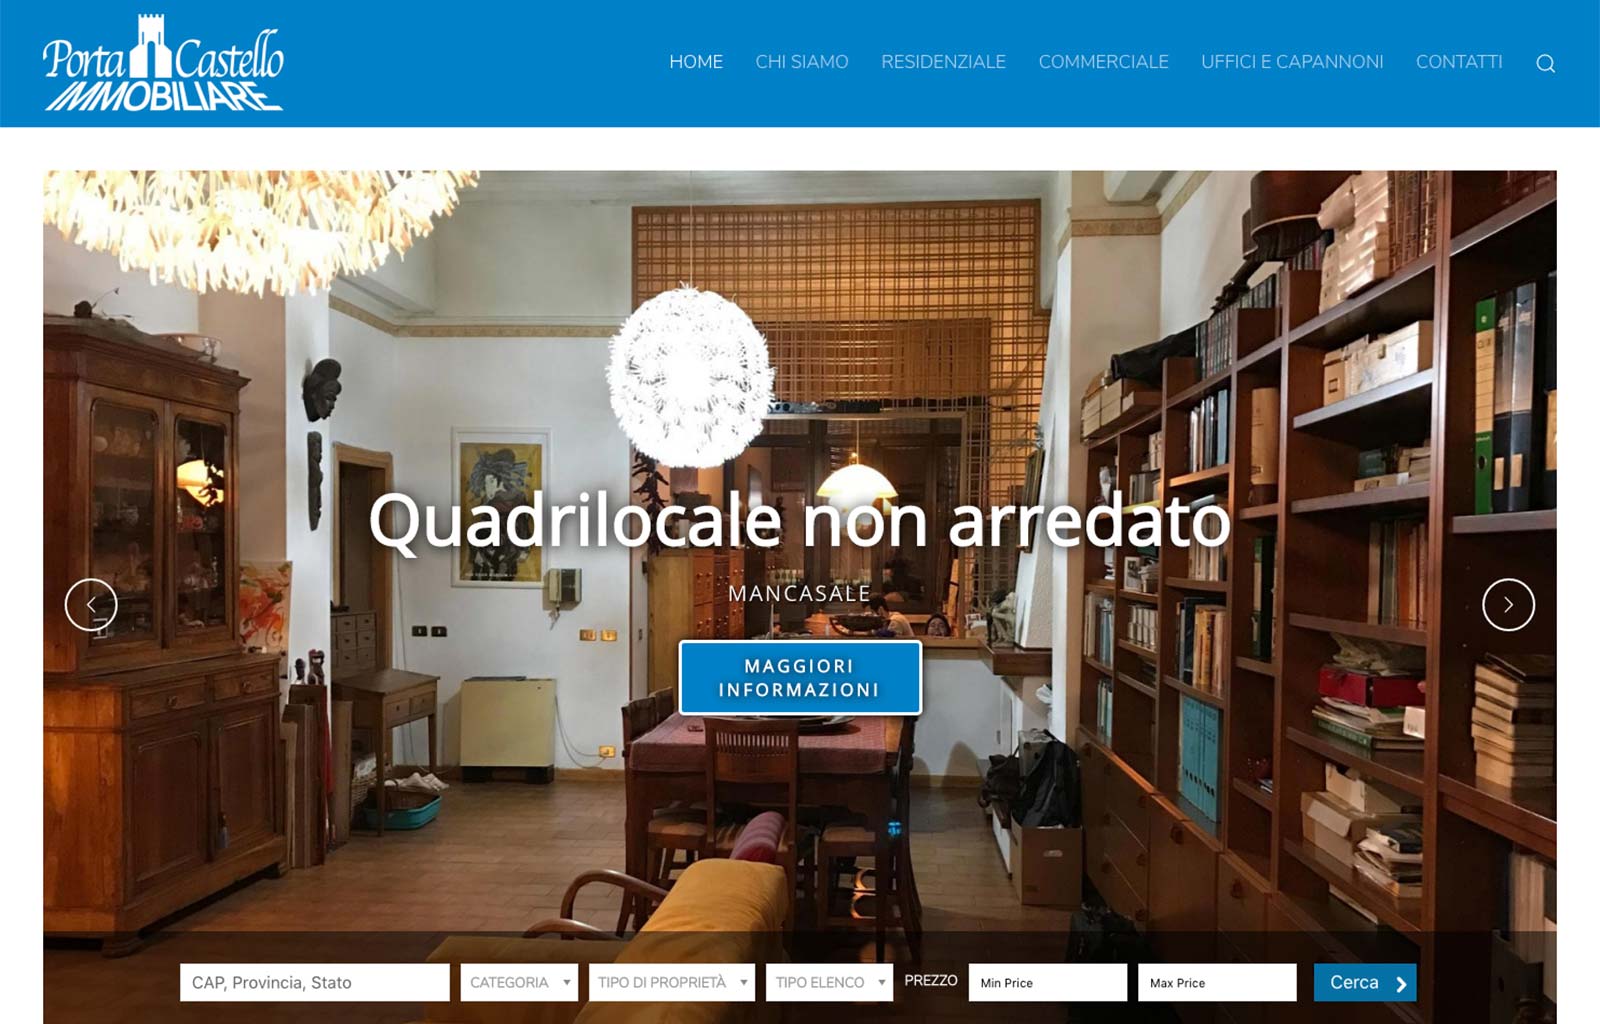 Immobiliare Porta Castello – Website